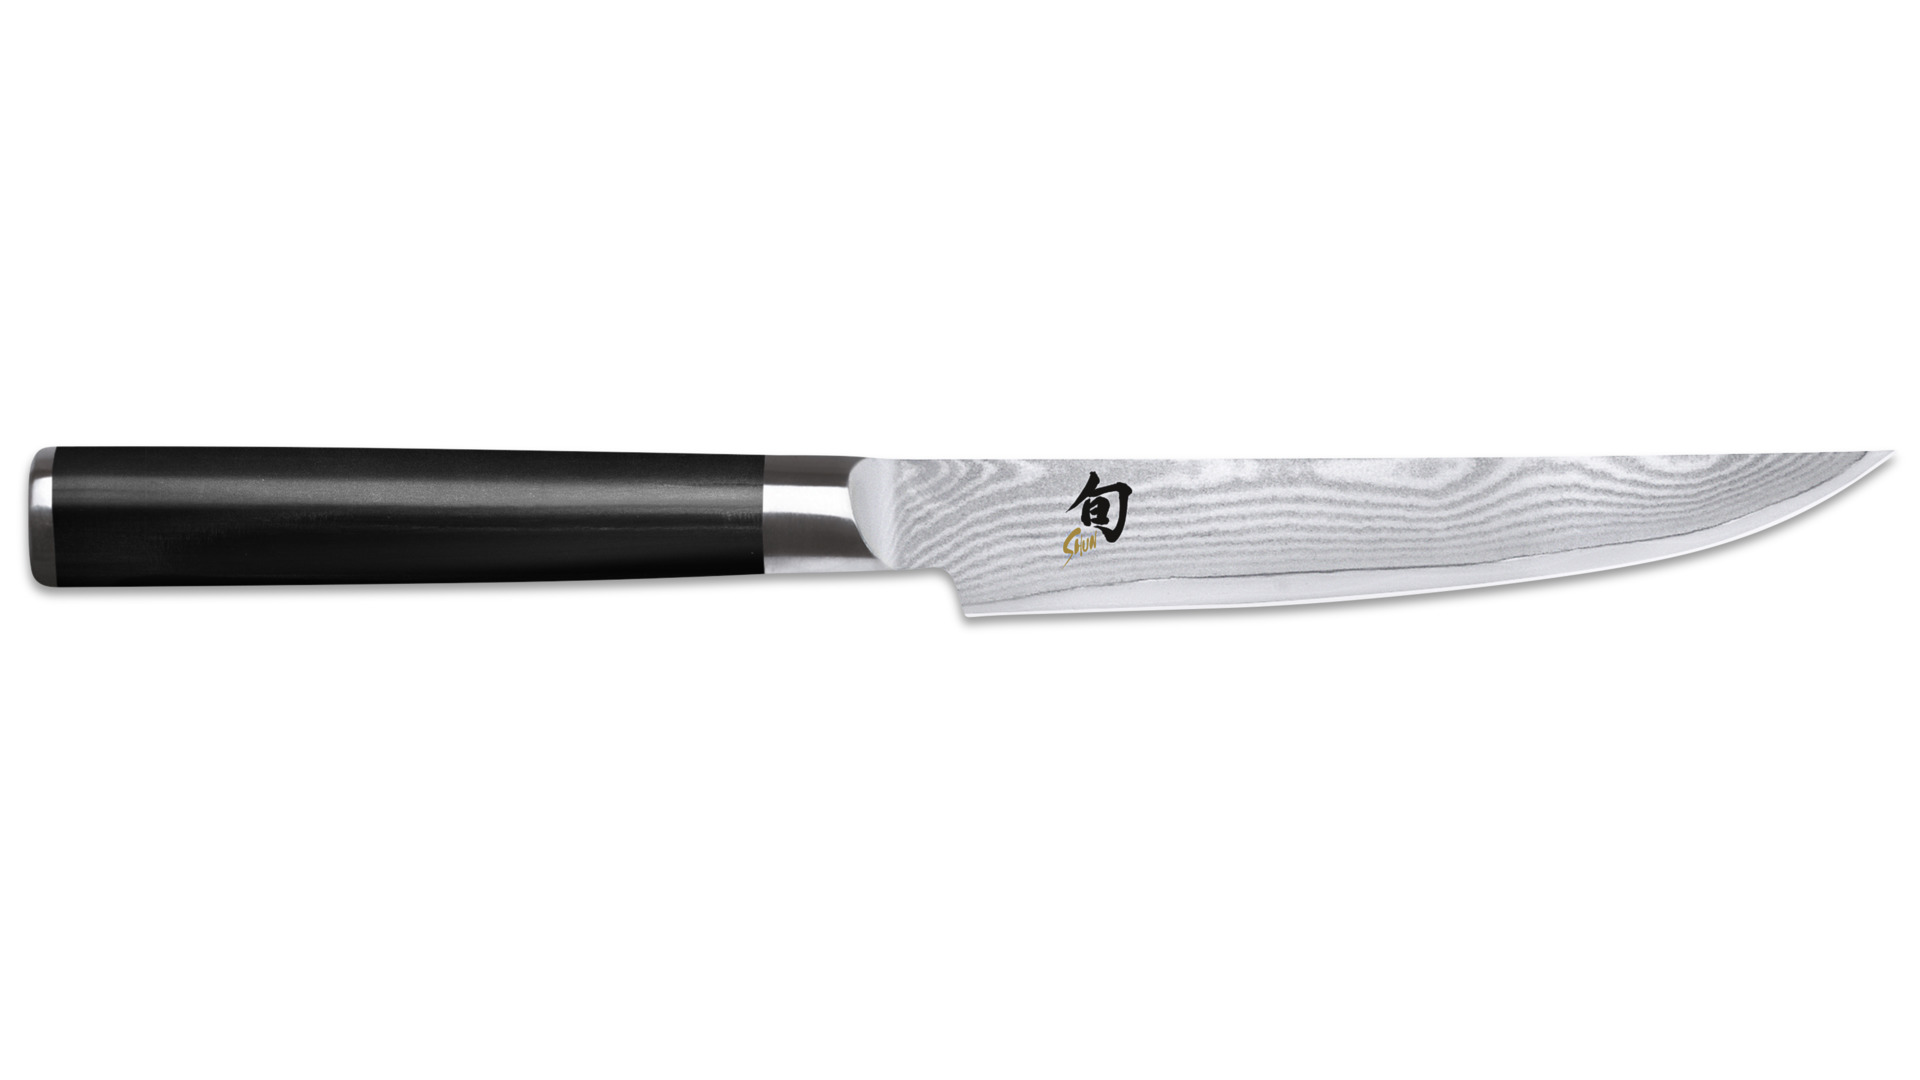 Нож для стейка KAI Шан Классик 12см, дамасская сталь, 32 слоя